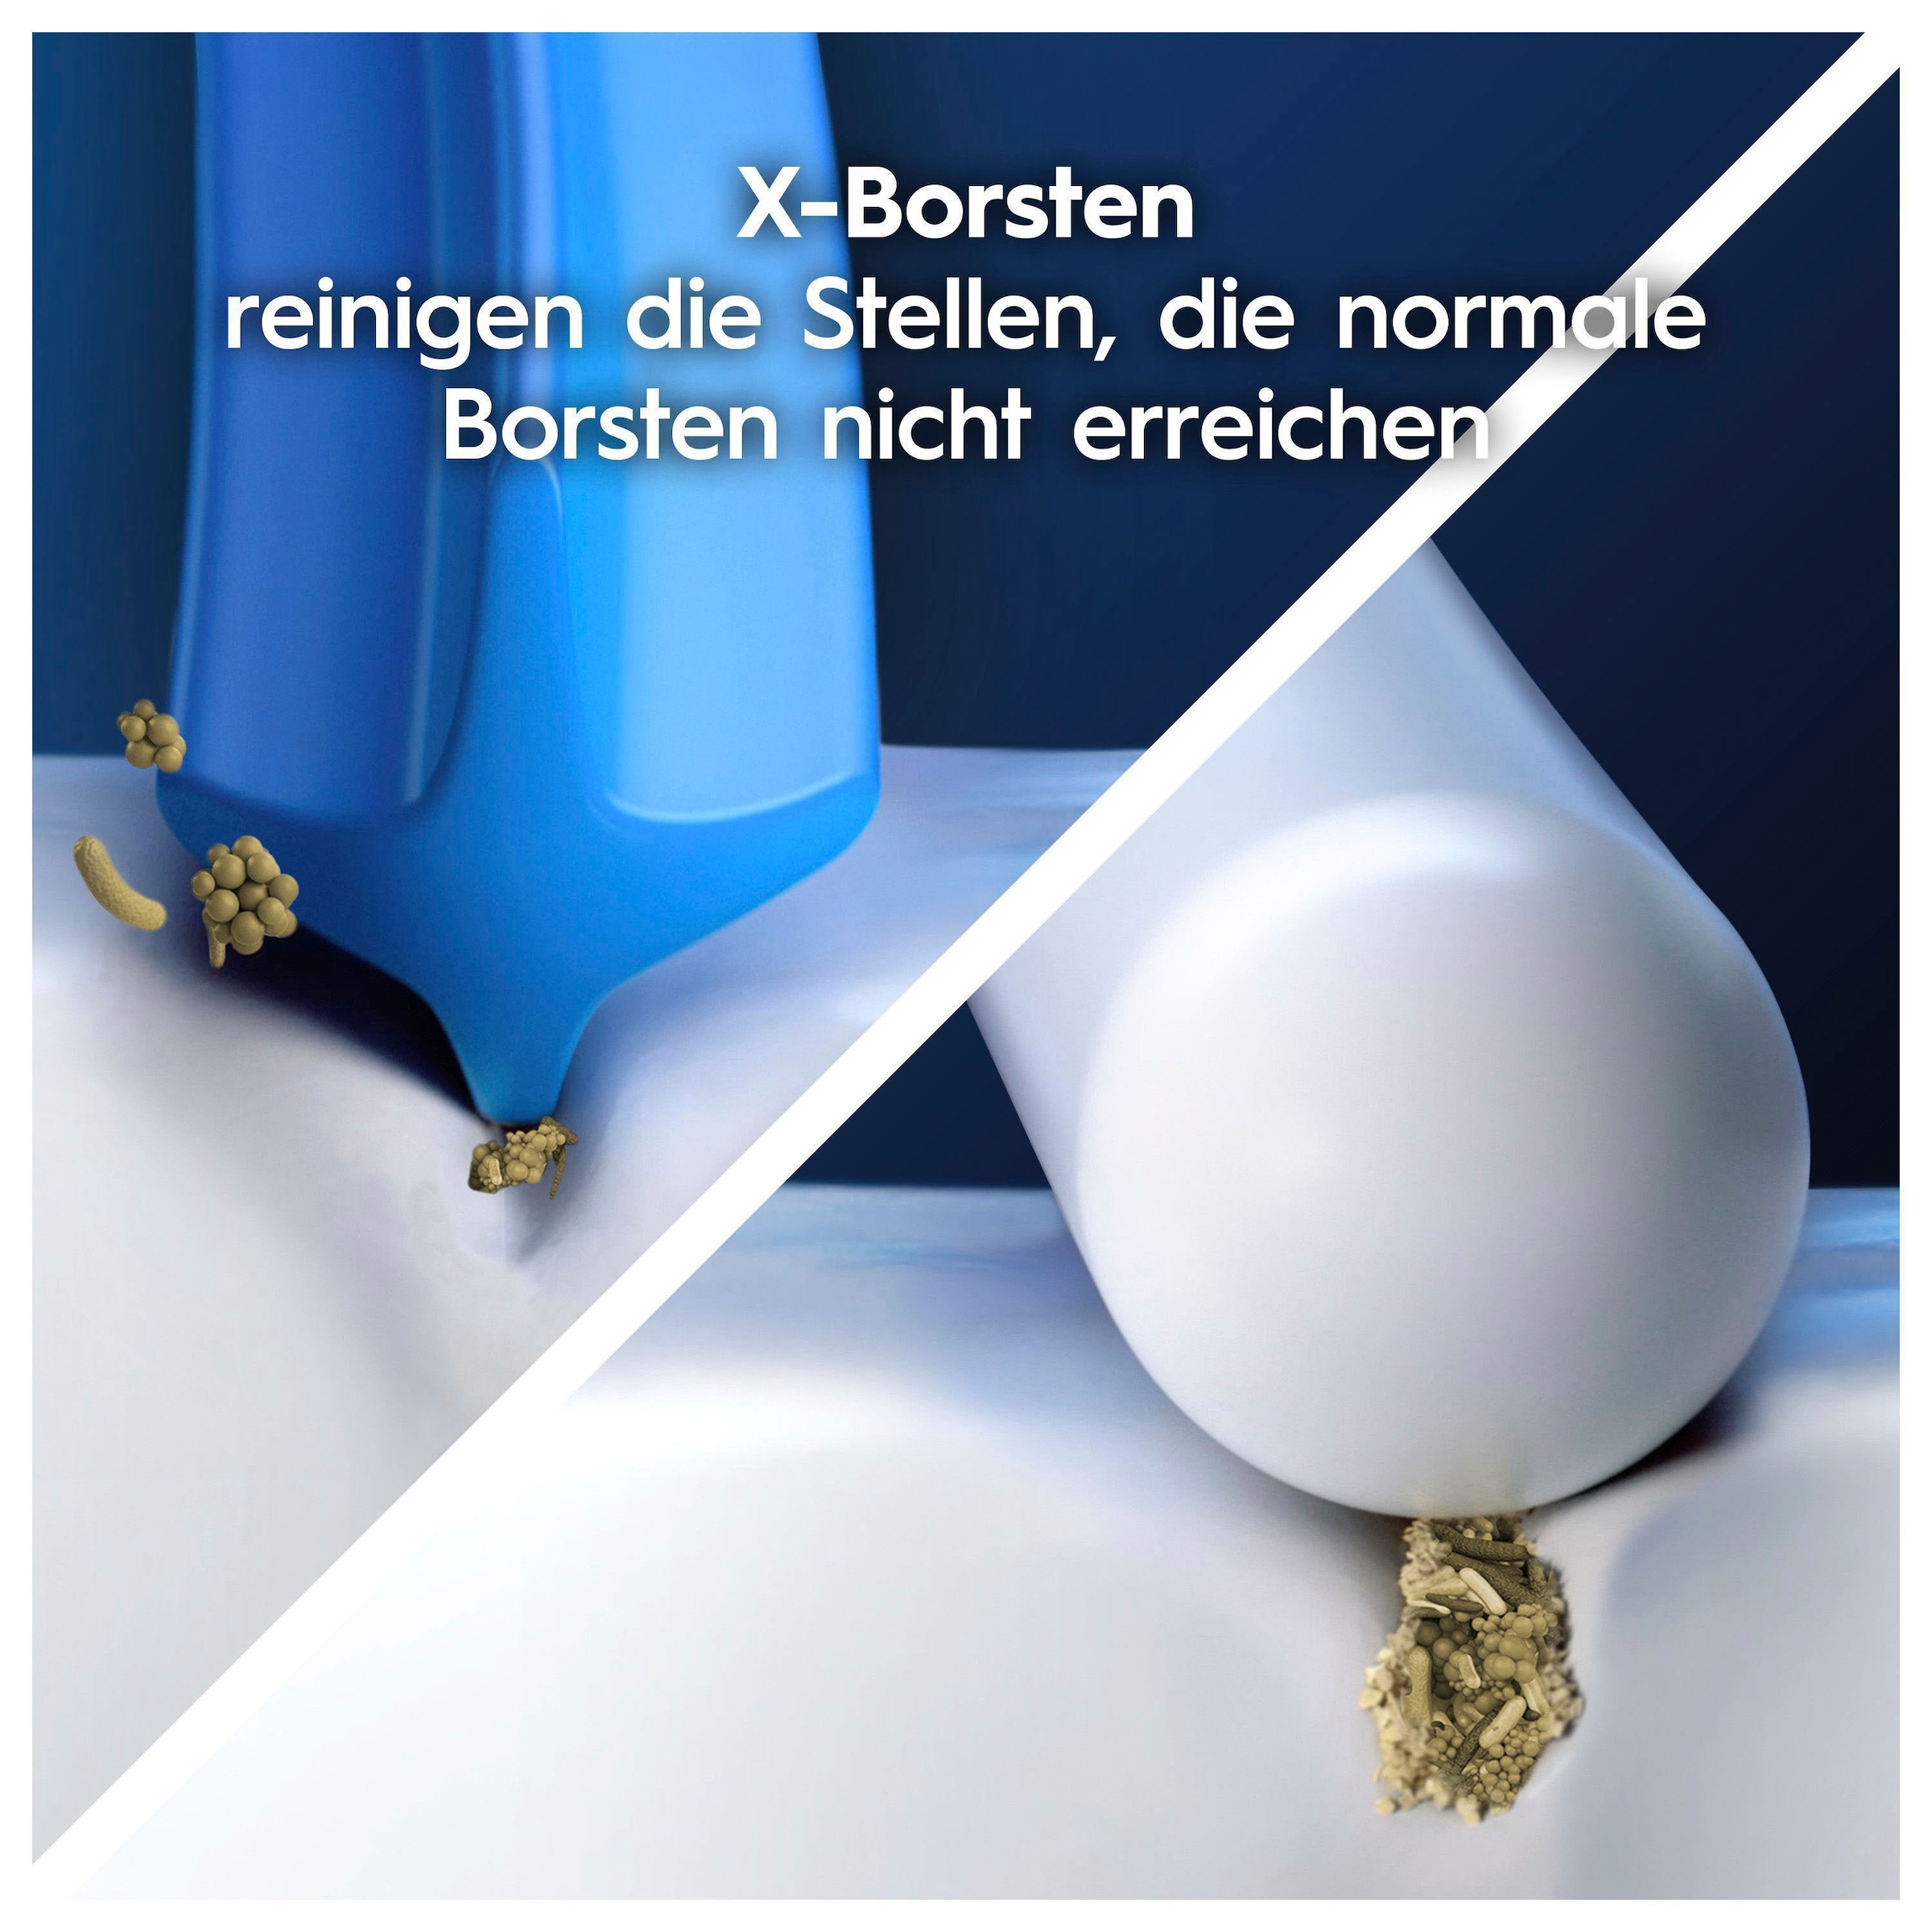 Oral-B Aufsteckbürsten »Pro Precision Clean«, X-förmige Borsten